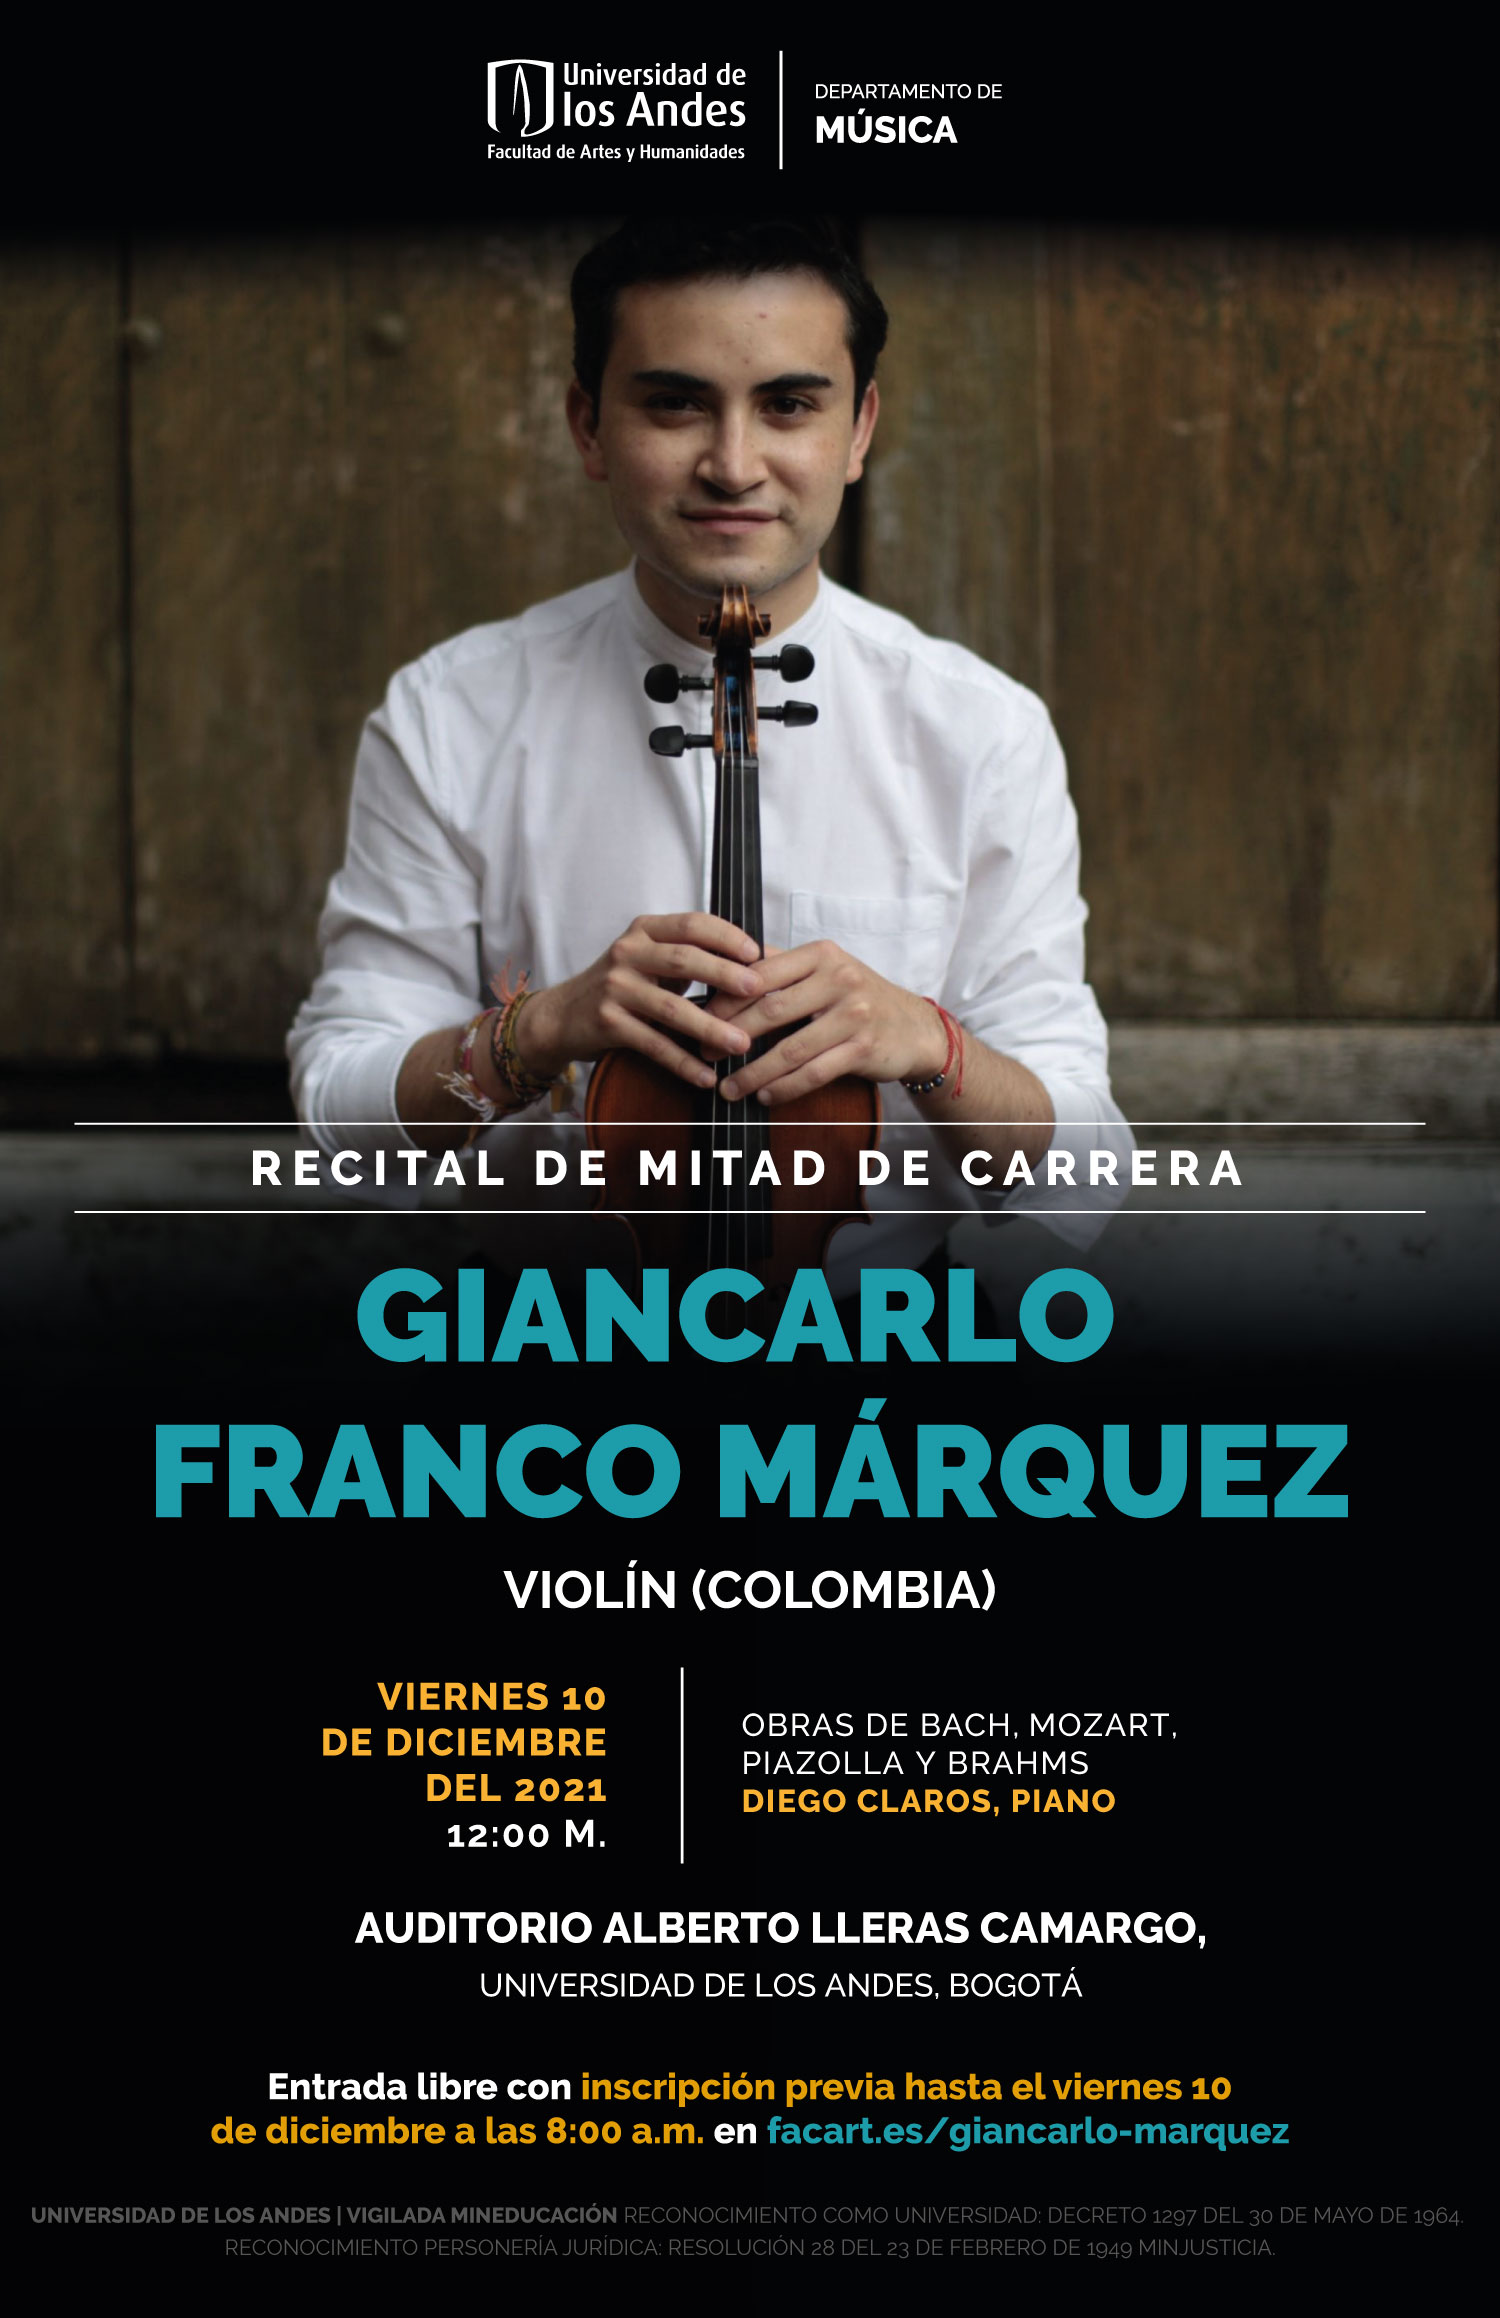 Recital de mitad de carrera: Giancarlo Franco Márquez, violín